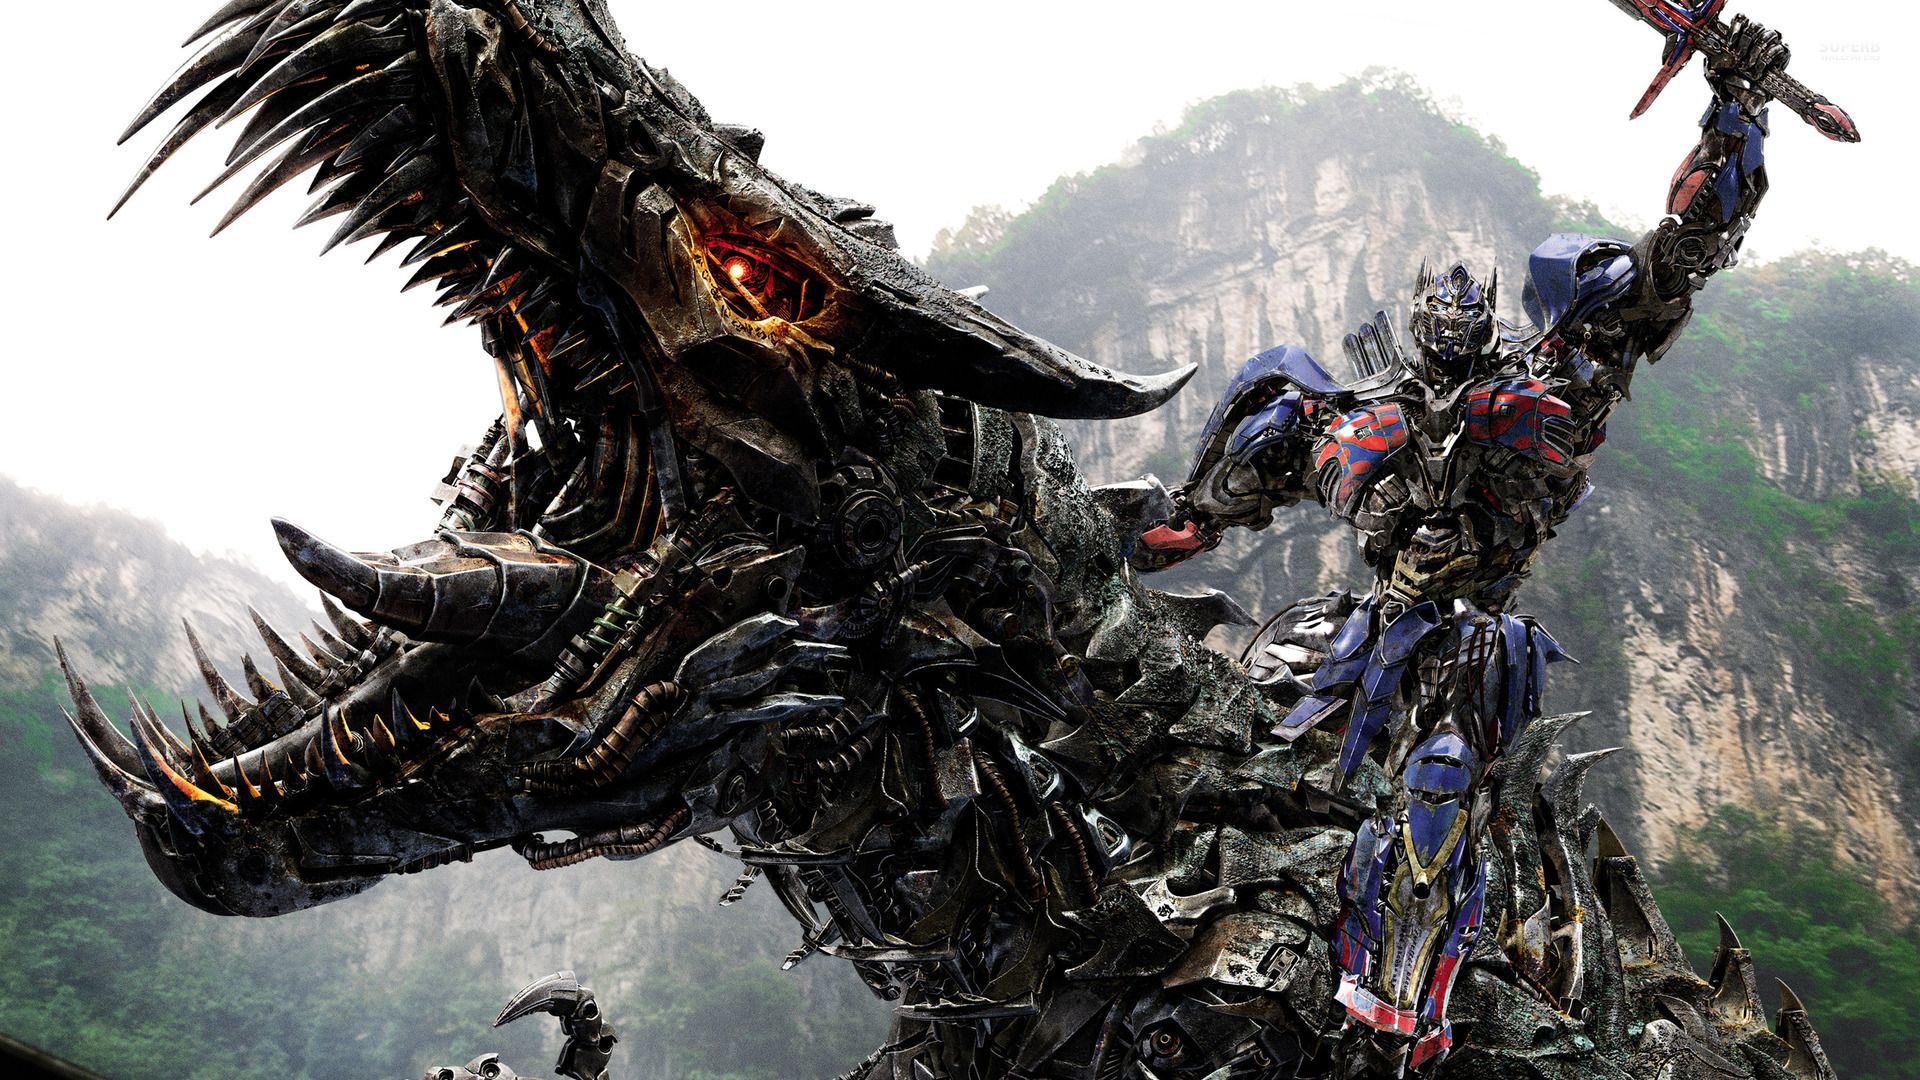 Transformers plánují vytvořit rozšířený svět plný sequelů a spin-offů po vzoru Marvelu